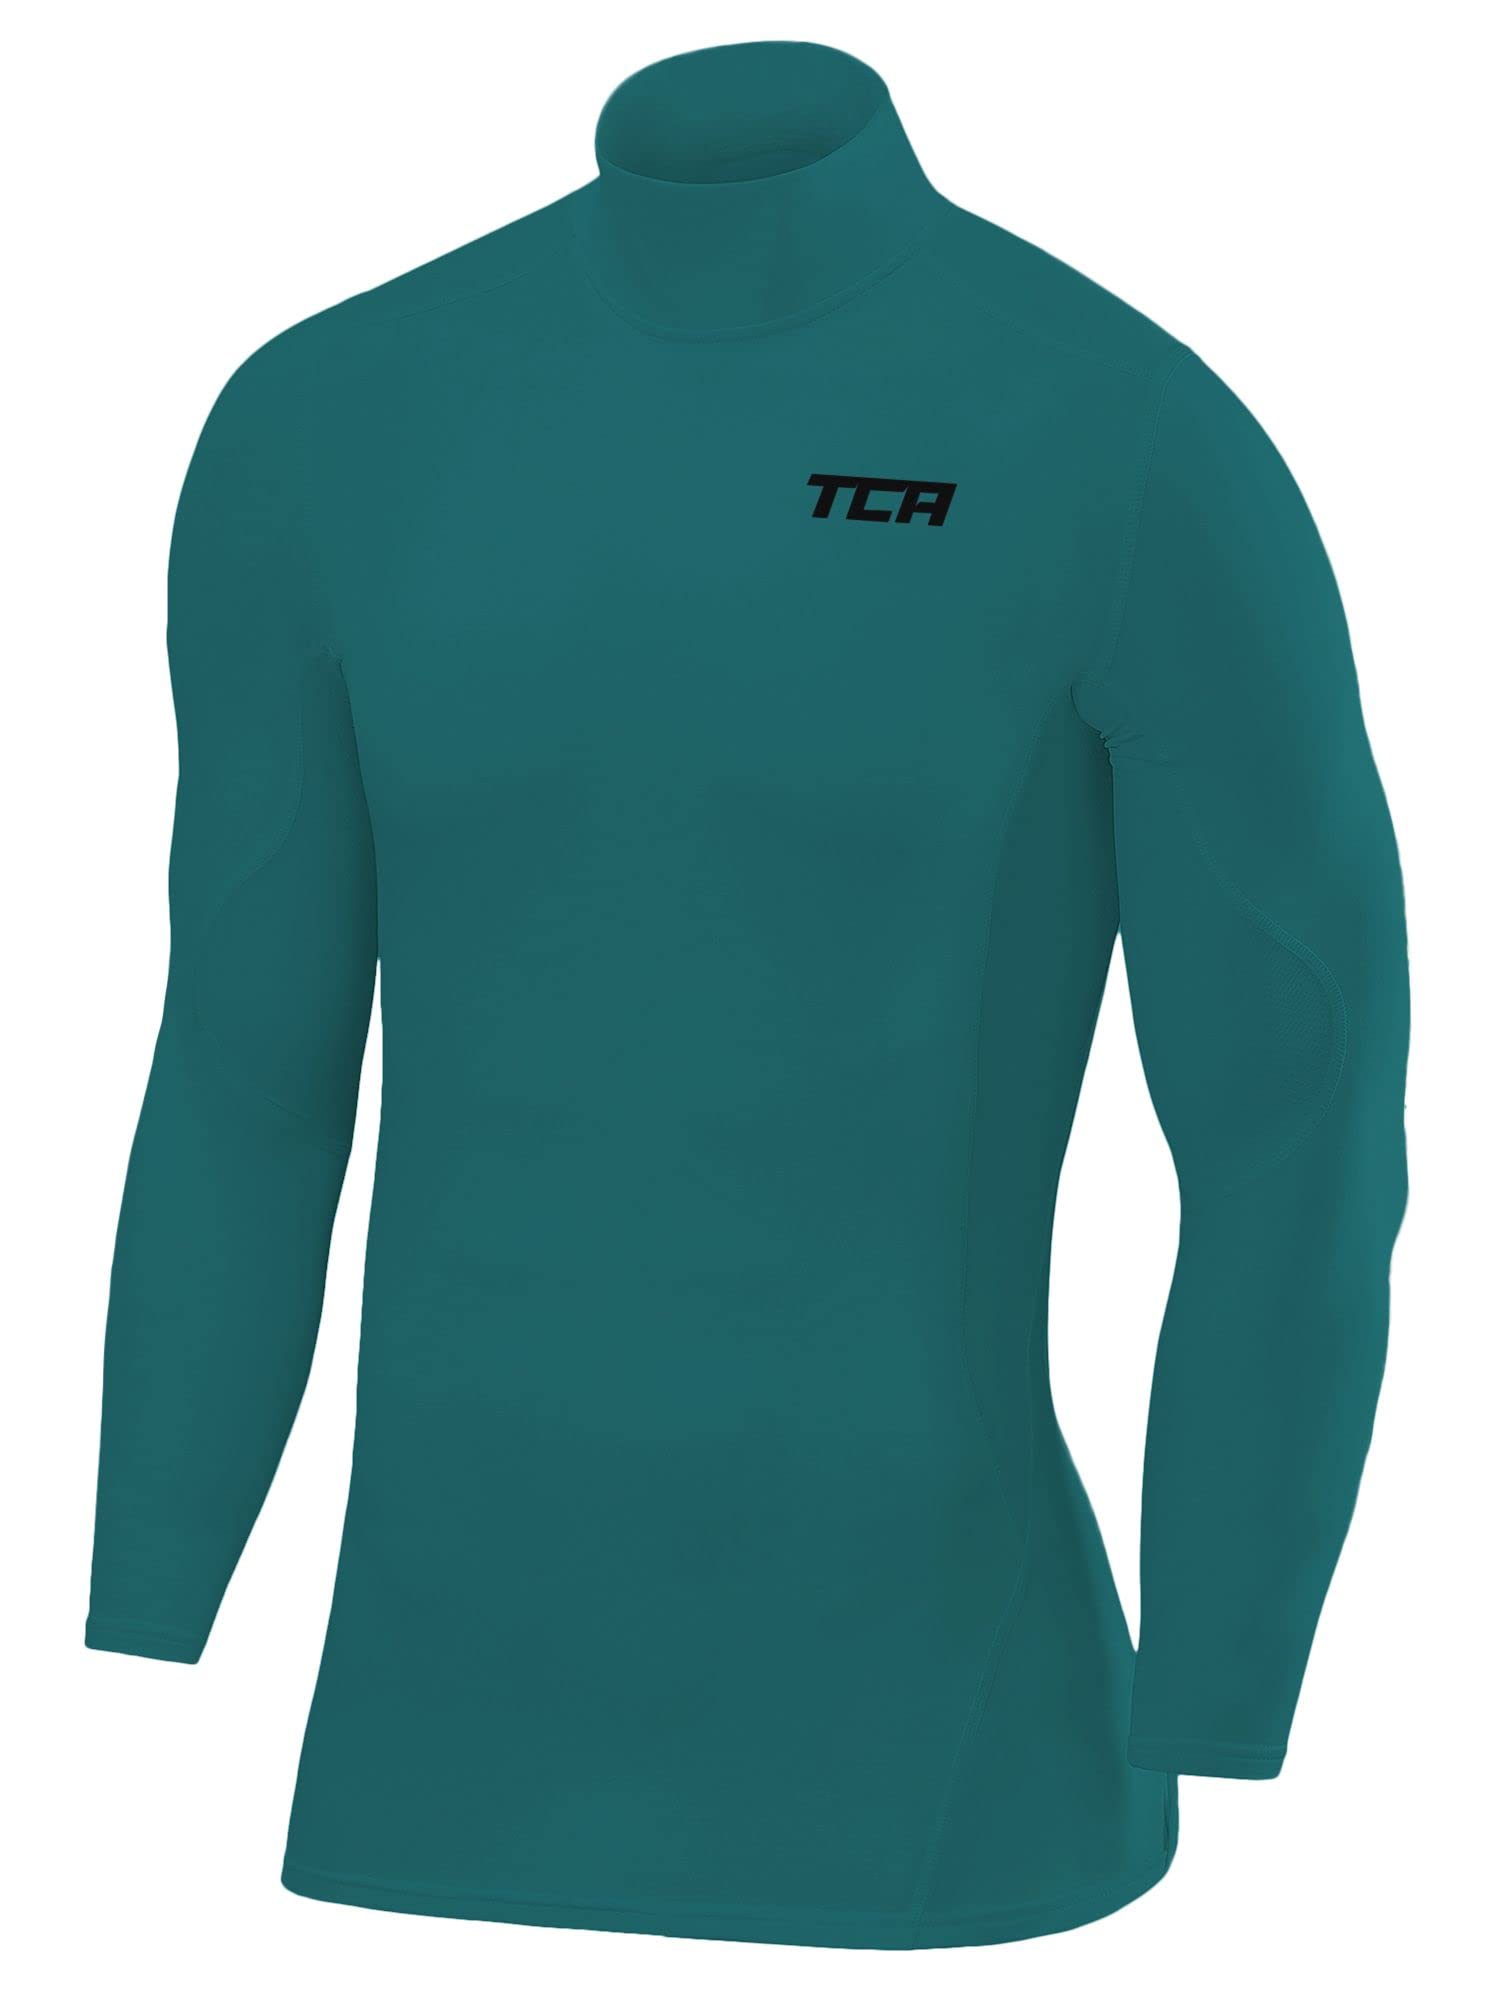 TCA Herren SuperThermal Baselayer Langarmshirt, Kompressionshirt mit Stehkragen - Grün, L